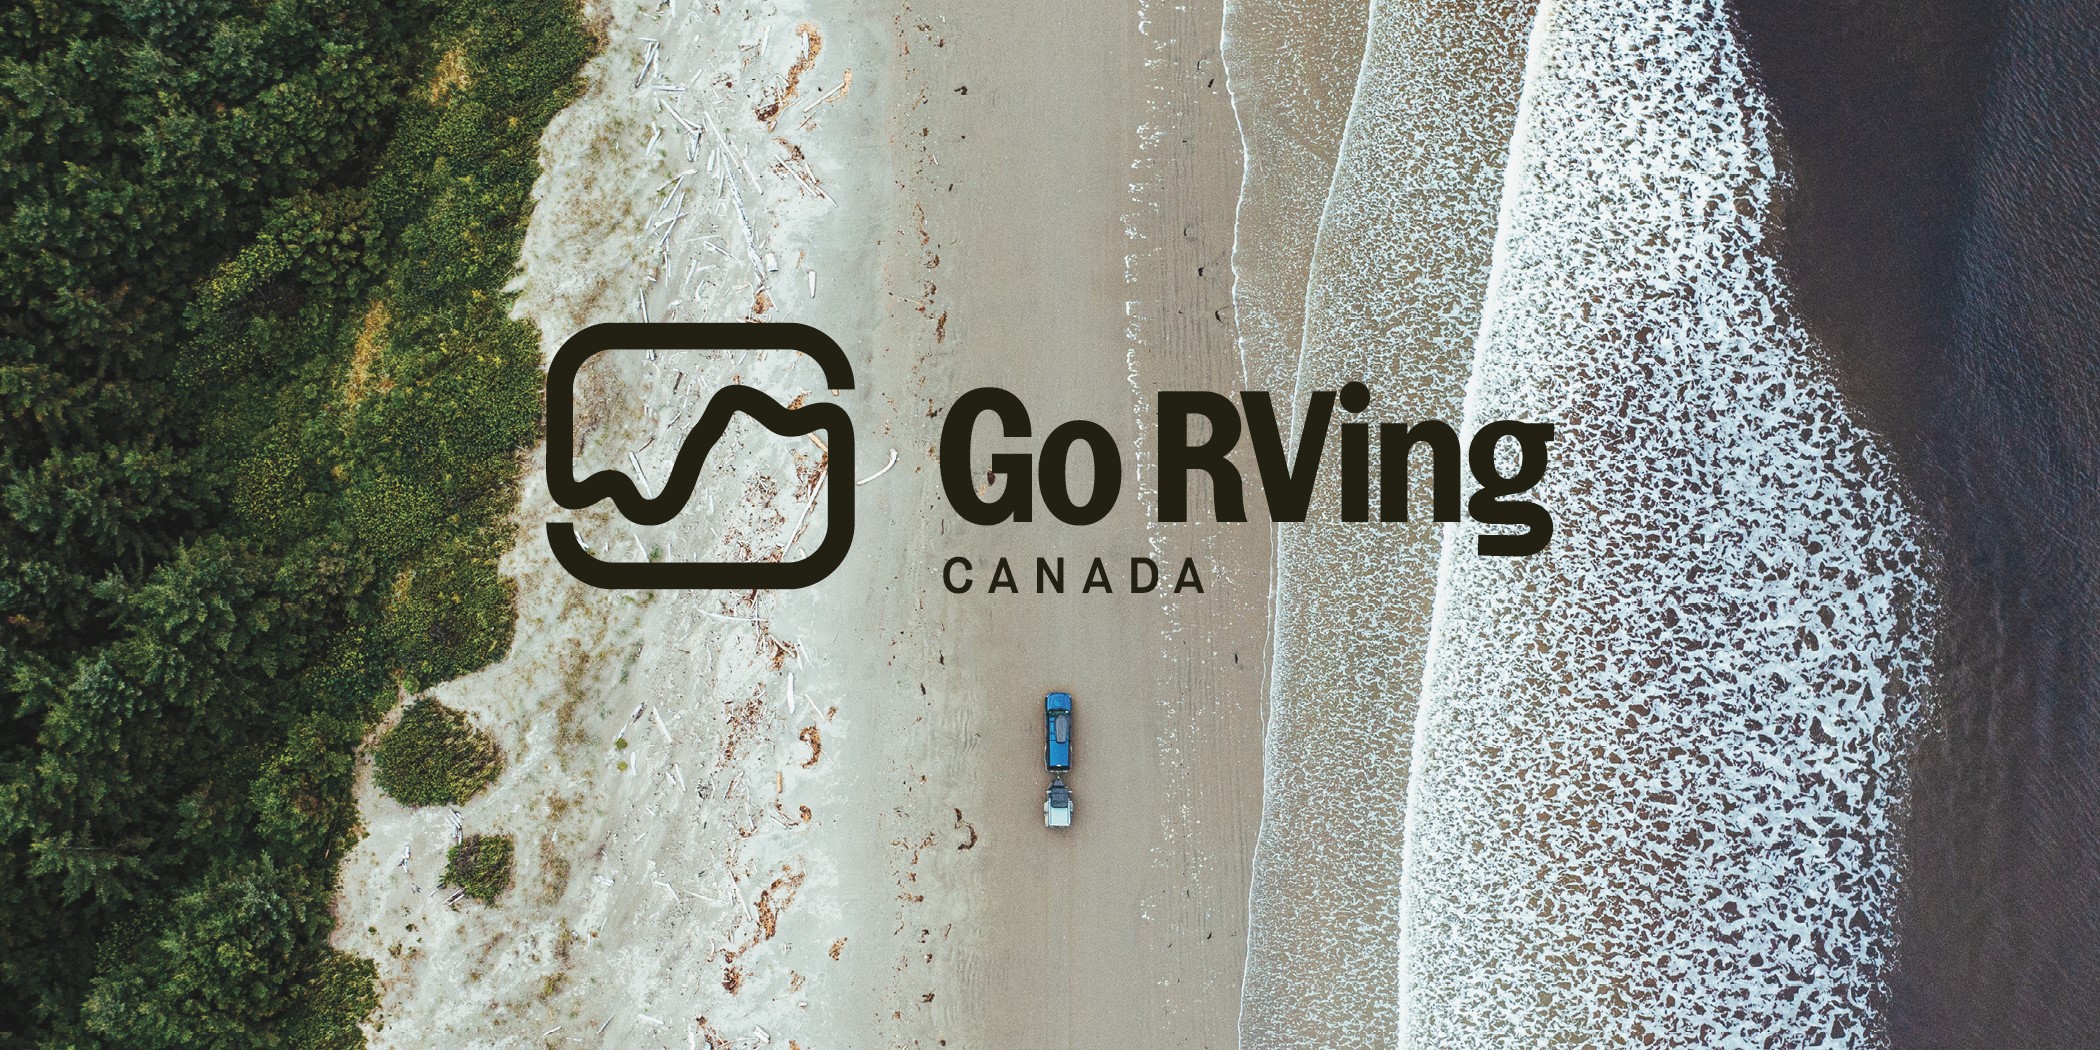 Go RVing Canada Rebrand logo